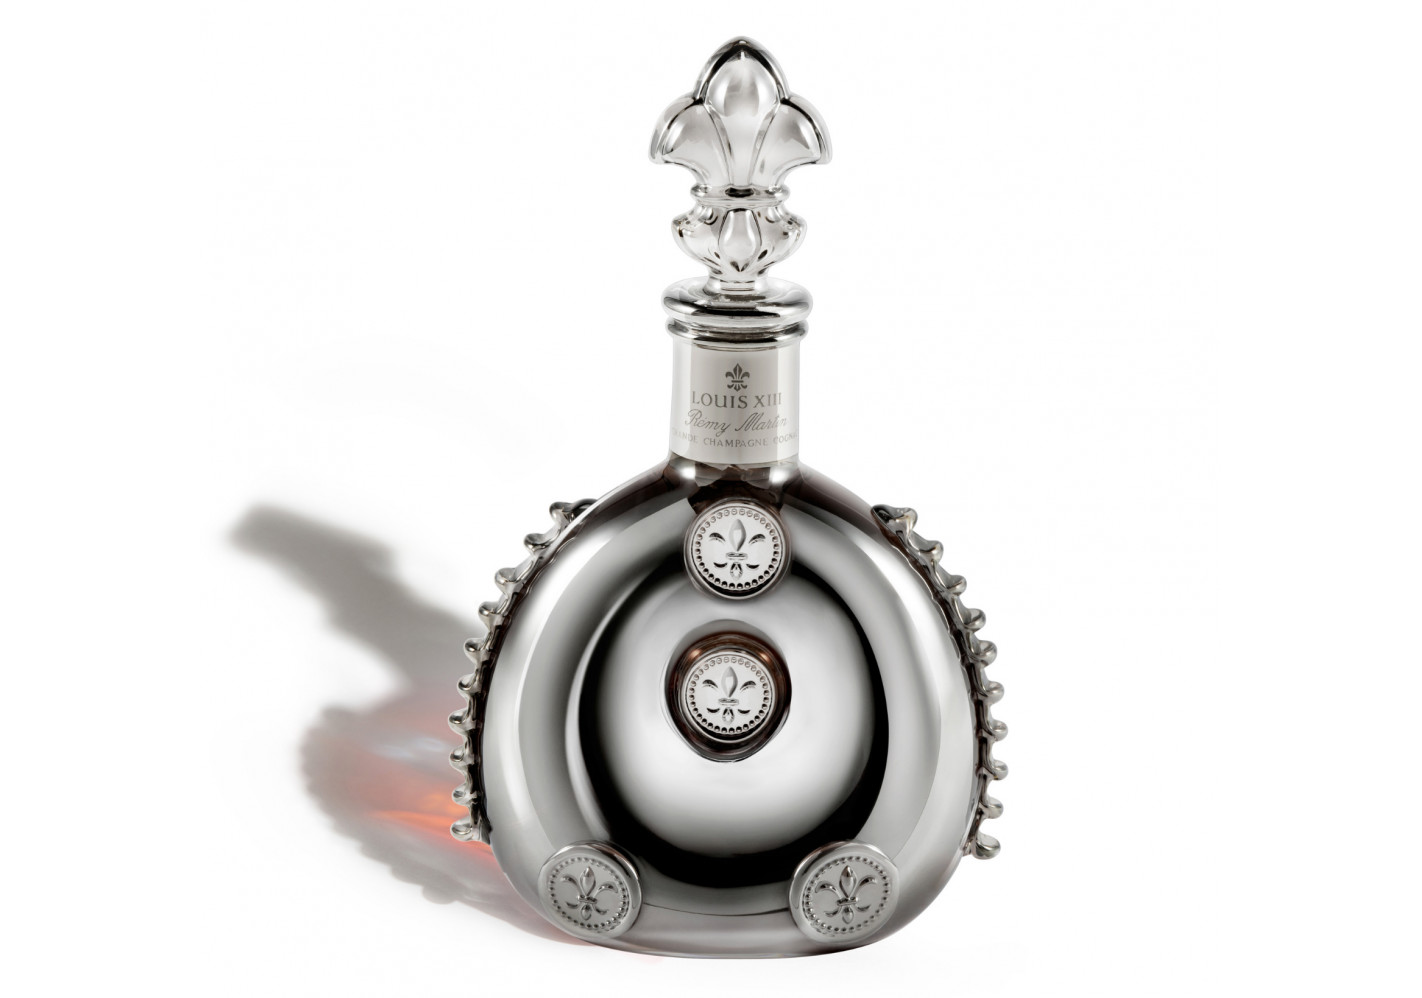 Remy Martin Louis XIII Cognac Miniature Prestige Cognac 